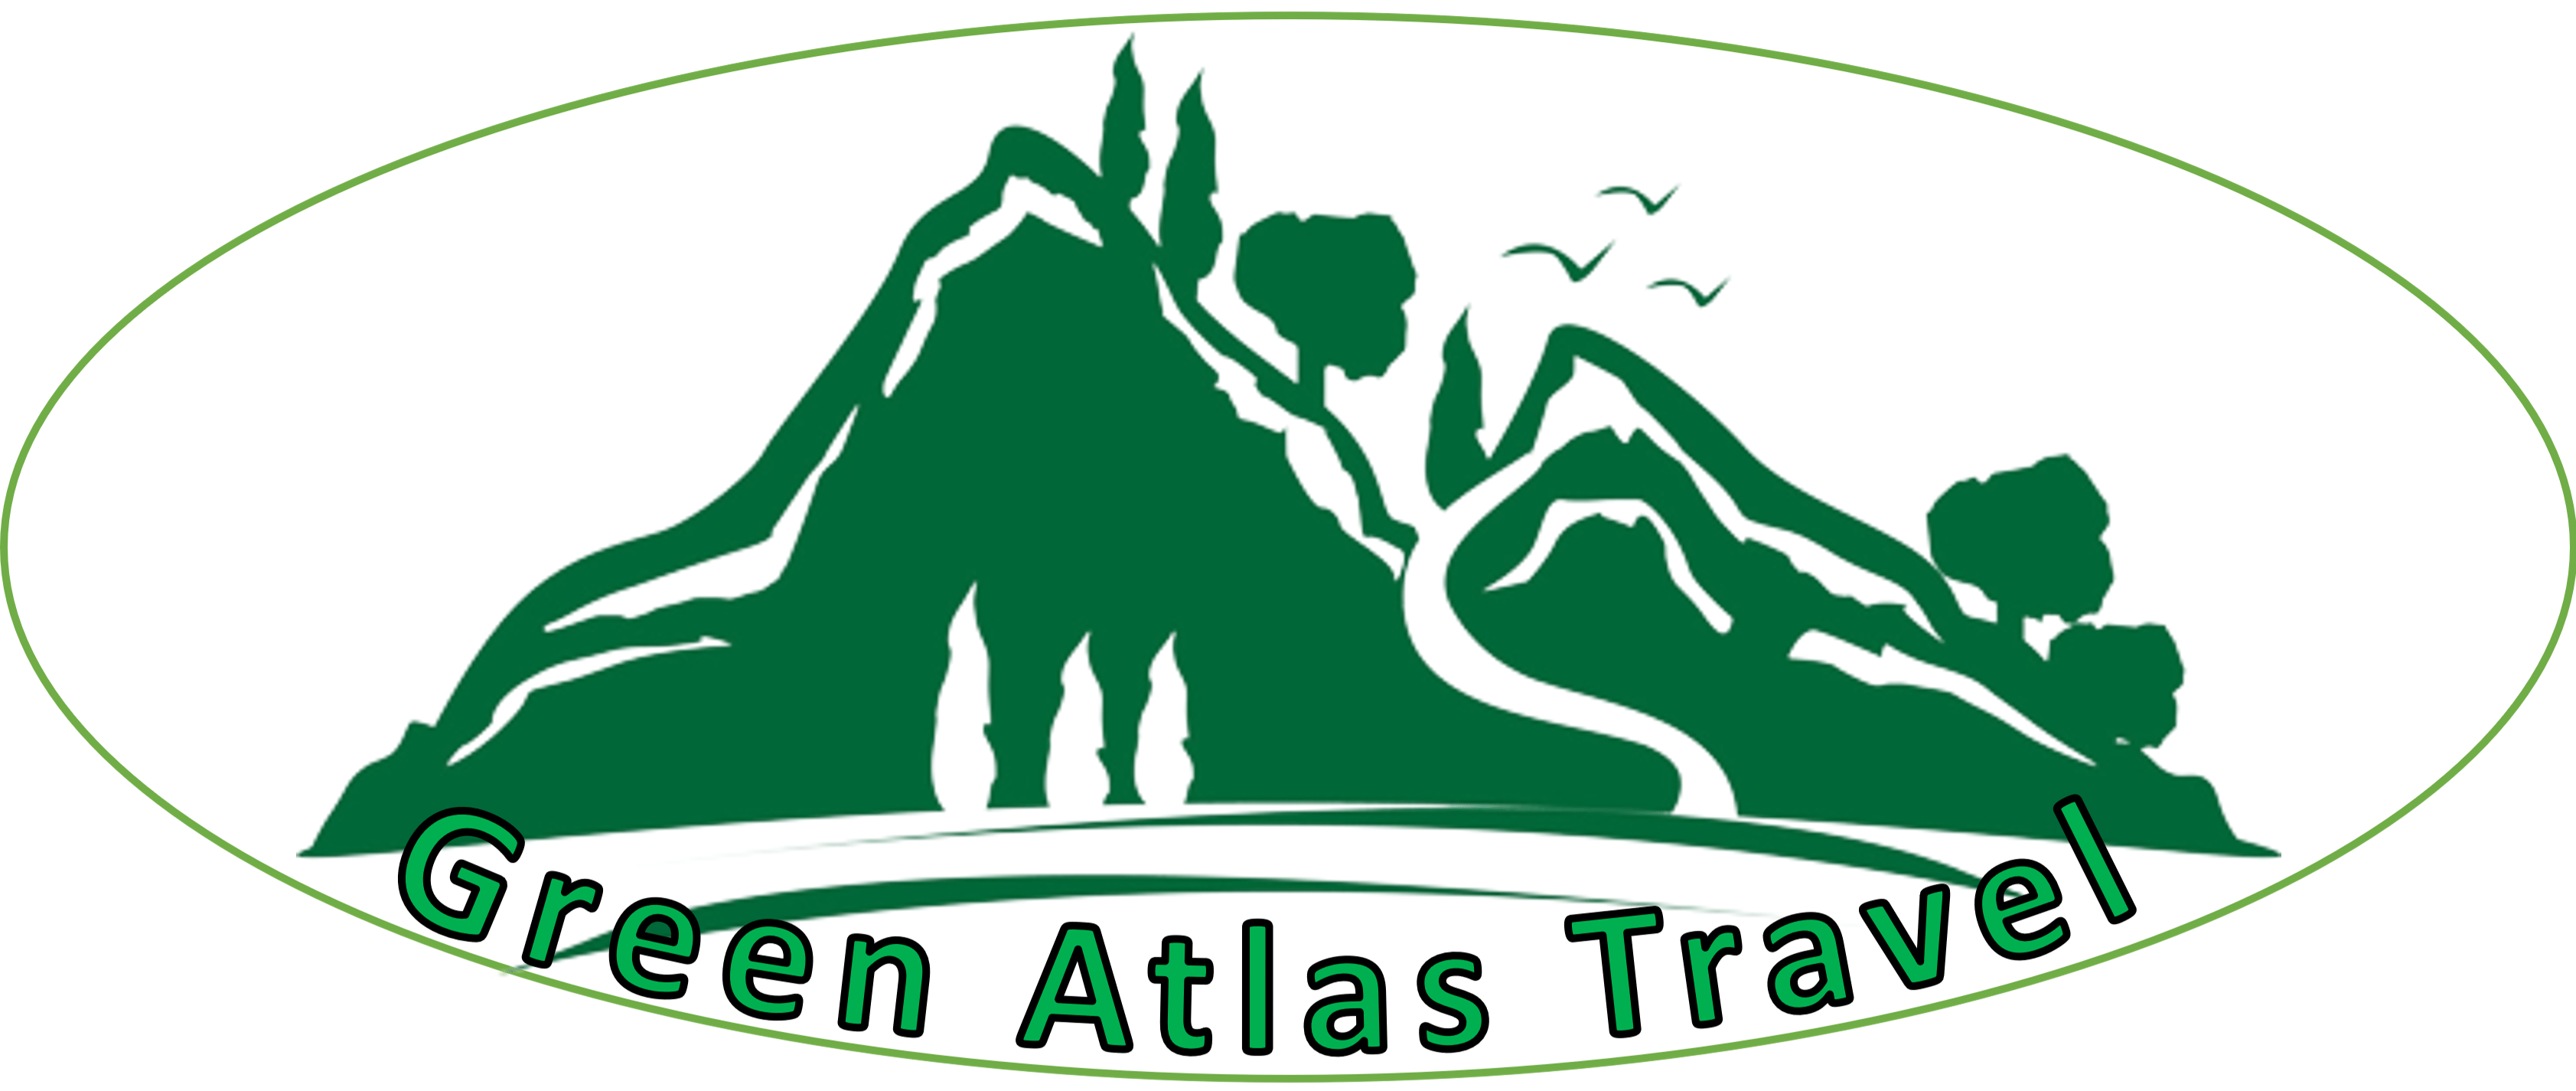 Green Atlas Travel